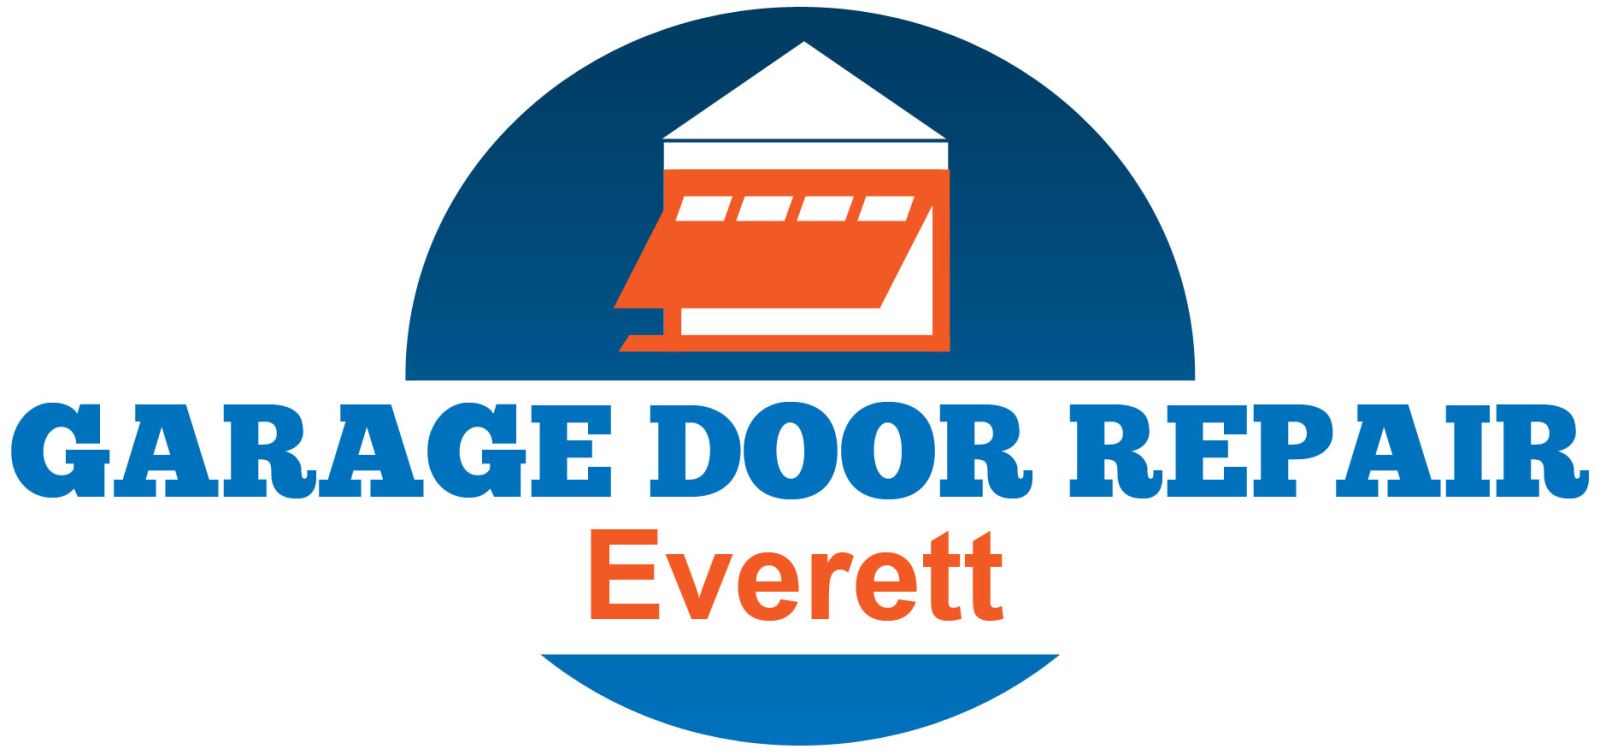 Garage Door Repair Everett, WA